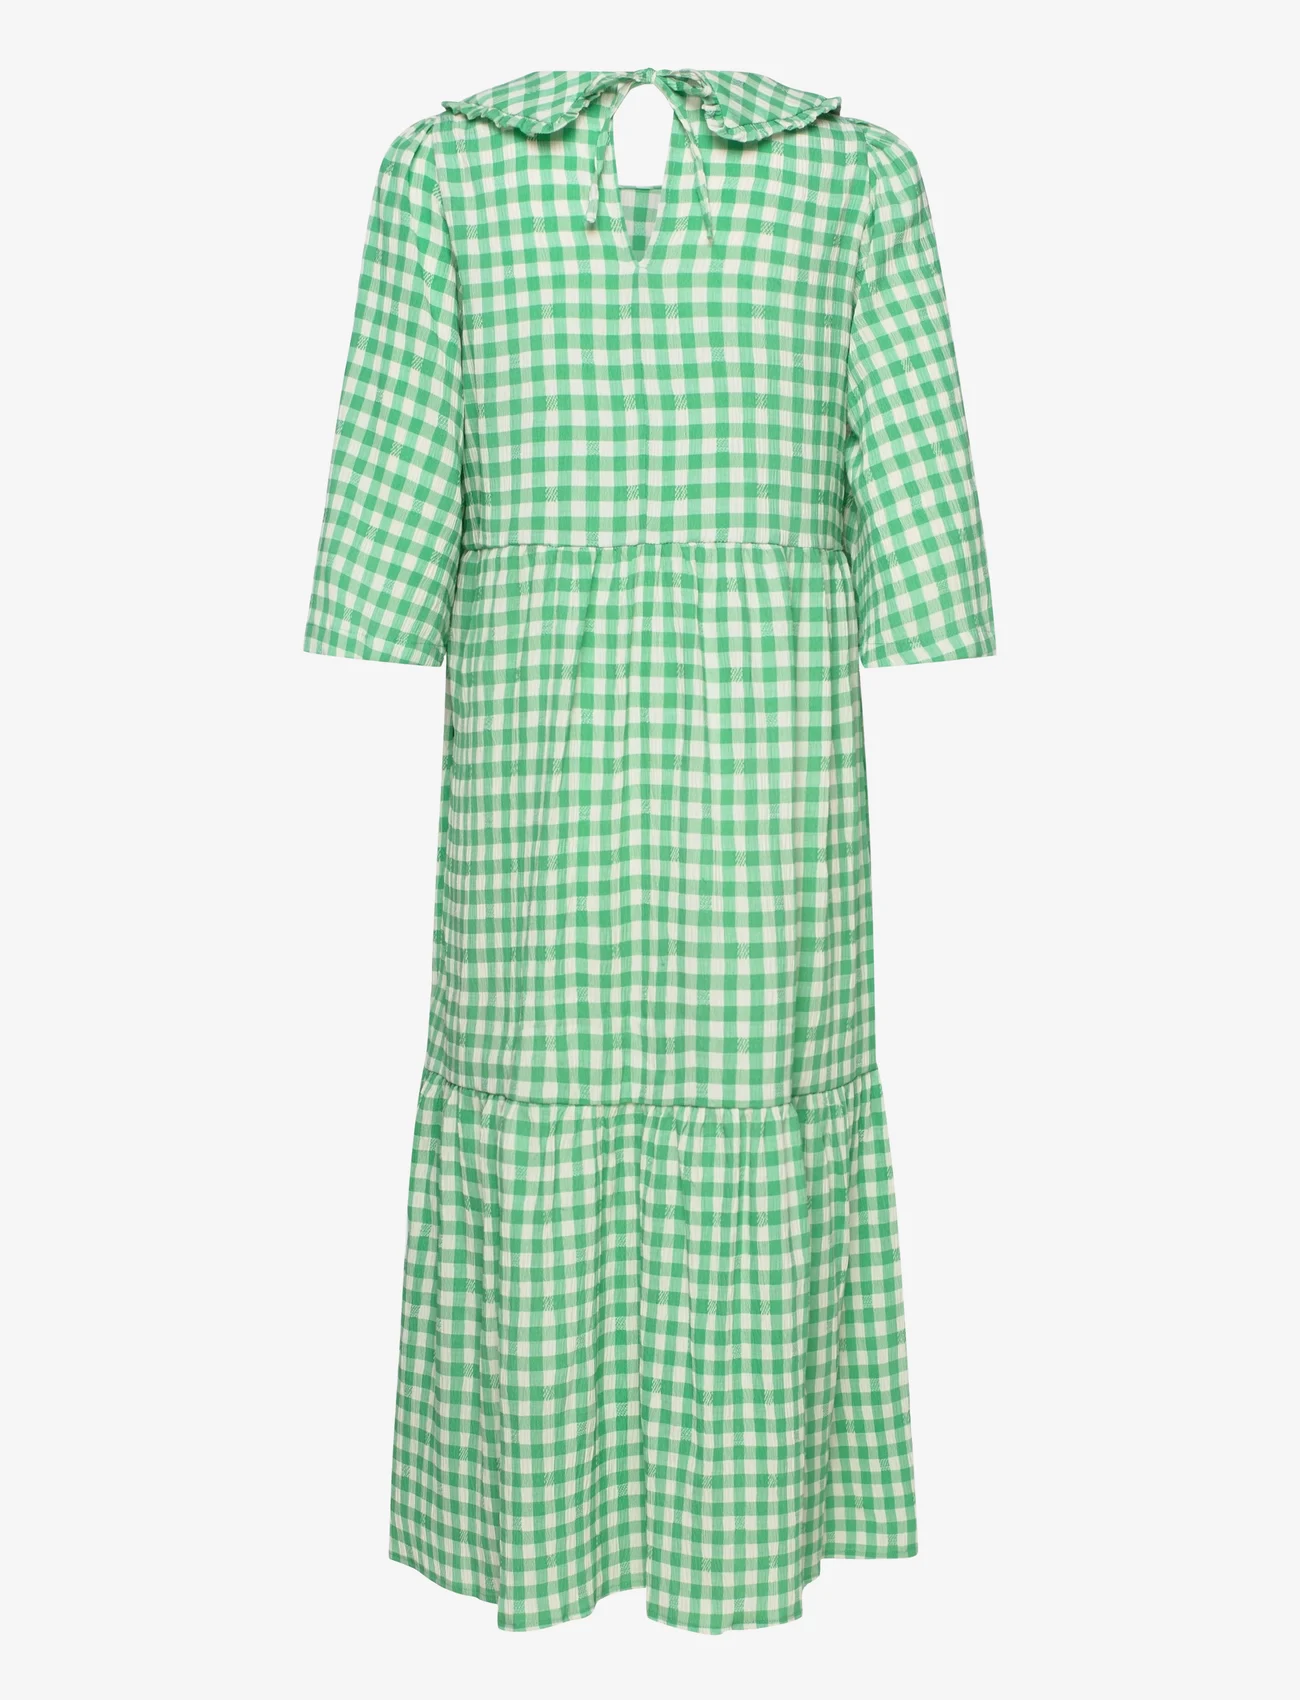 Lollys Laundry - Sonya Dress - sommerkleider - 40 green - 1